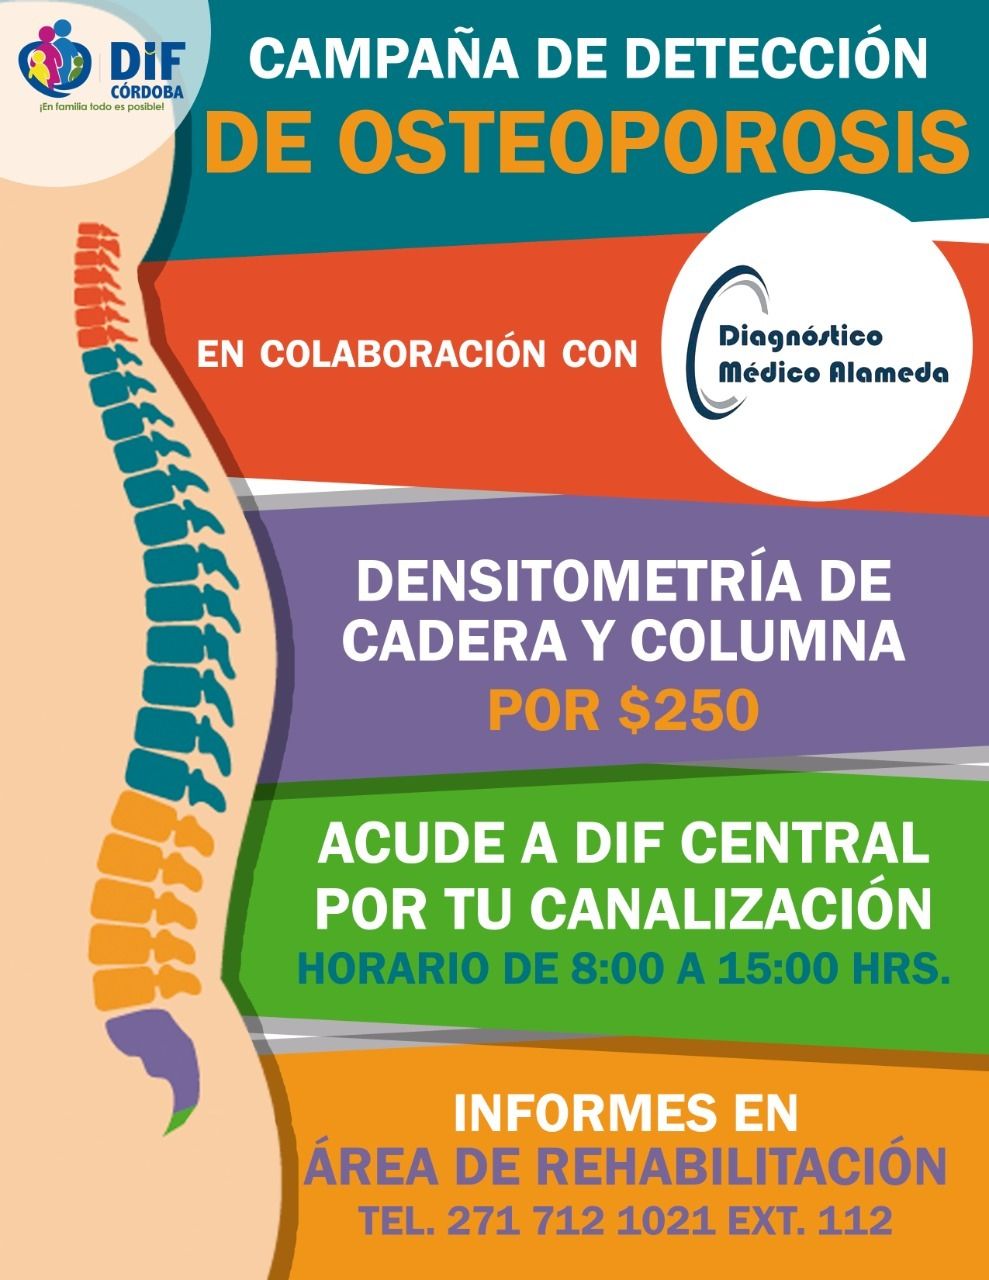 Invita DIF a participar en Campaña contra la Osteoporosis